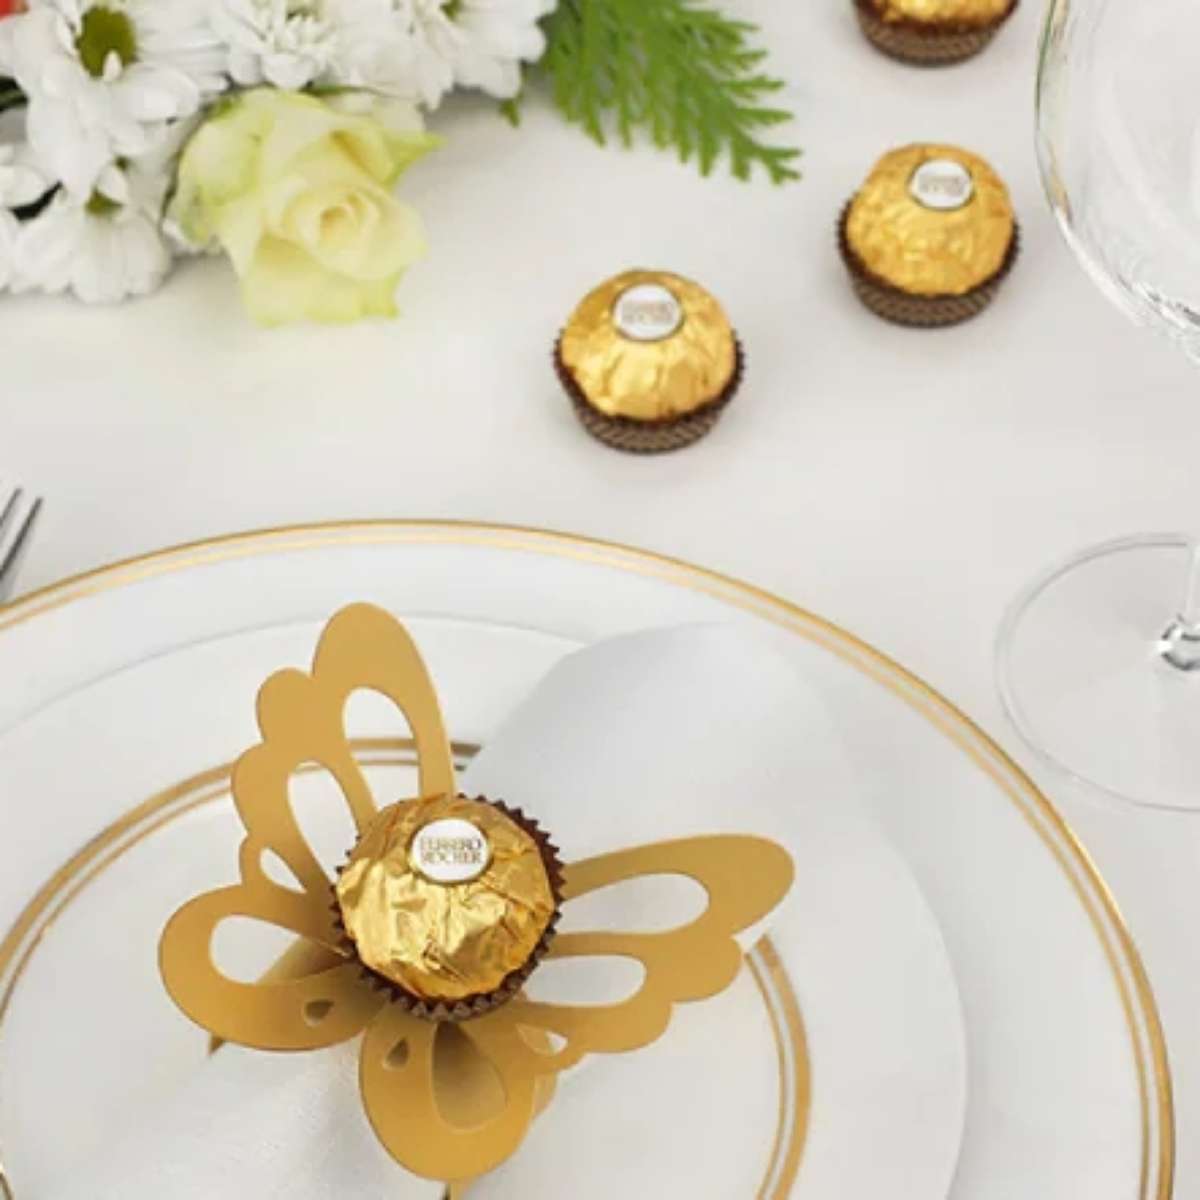 Mesa posta de fim de ano: ideias para decorar com bombons Ferrero Rocher